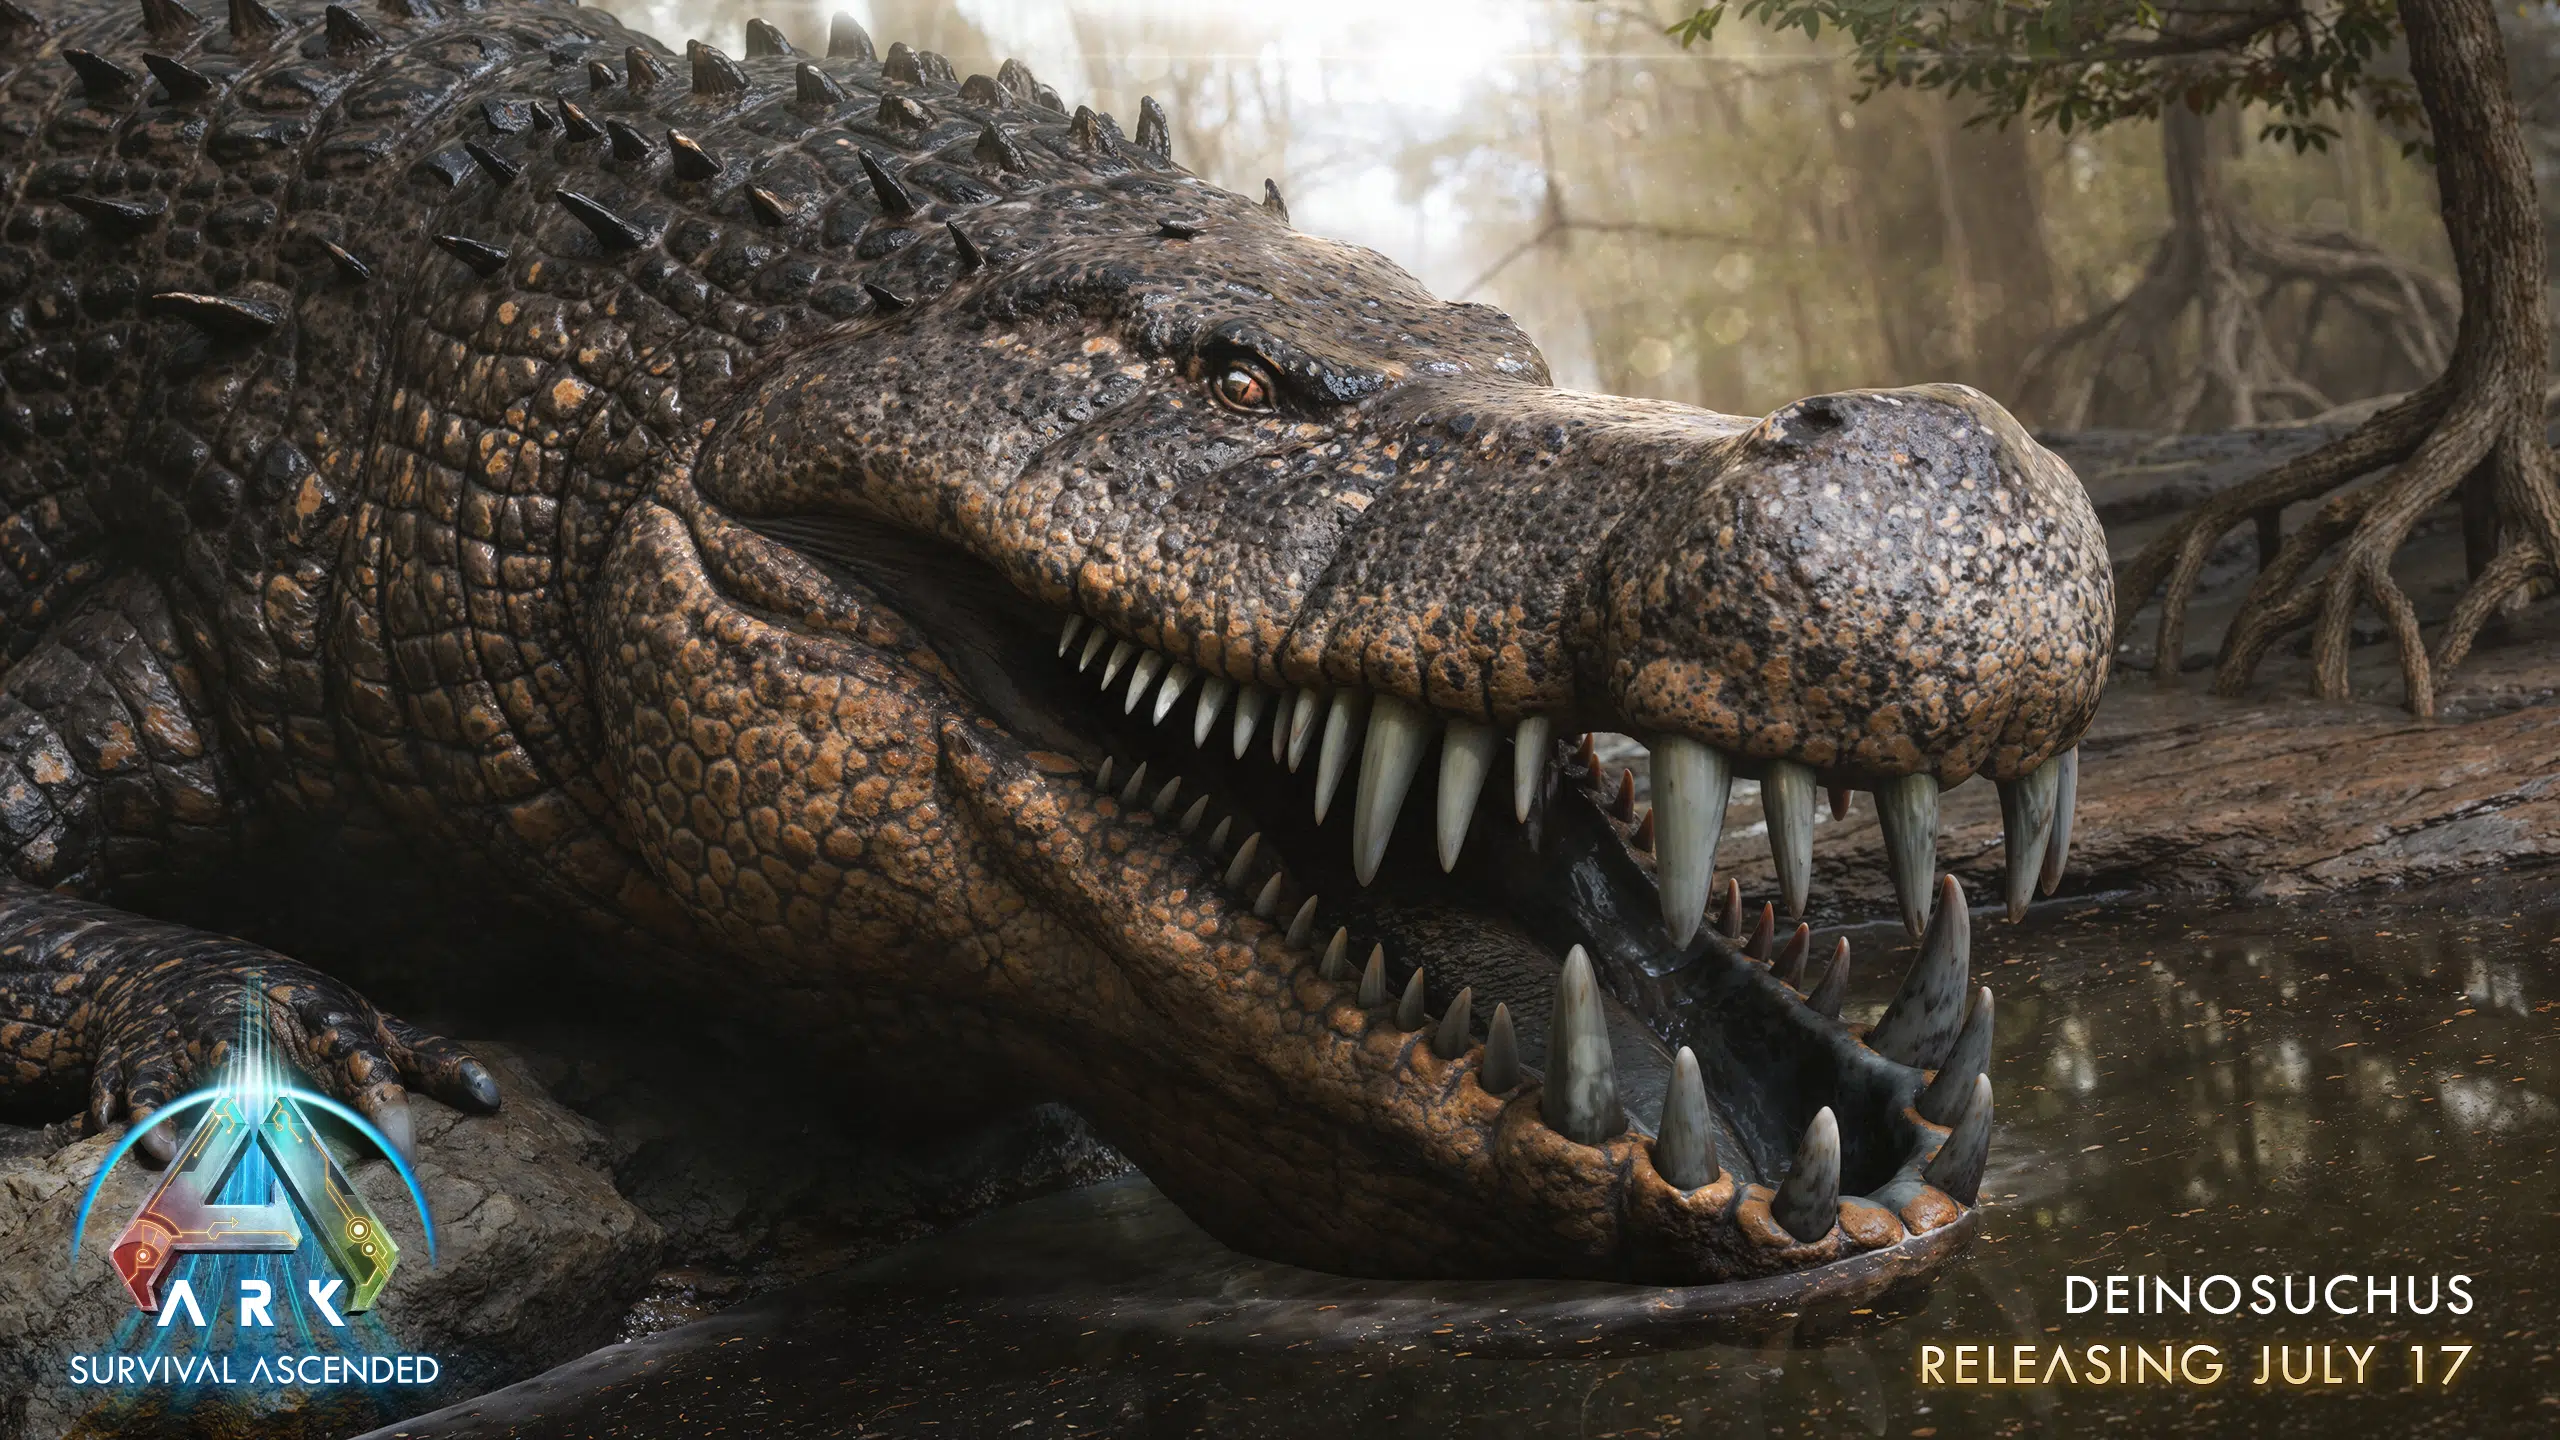 Ark Survival Ascended Güncellemesi 1.049.004, 17 Temmuz’da Deinosuchus’u Merkeze Ekliyor